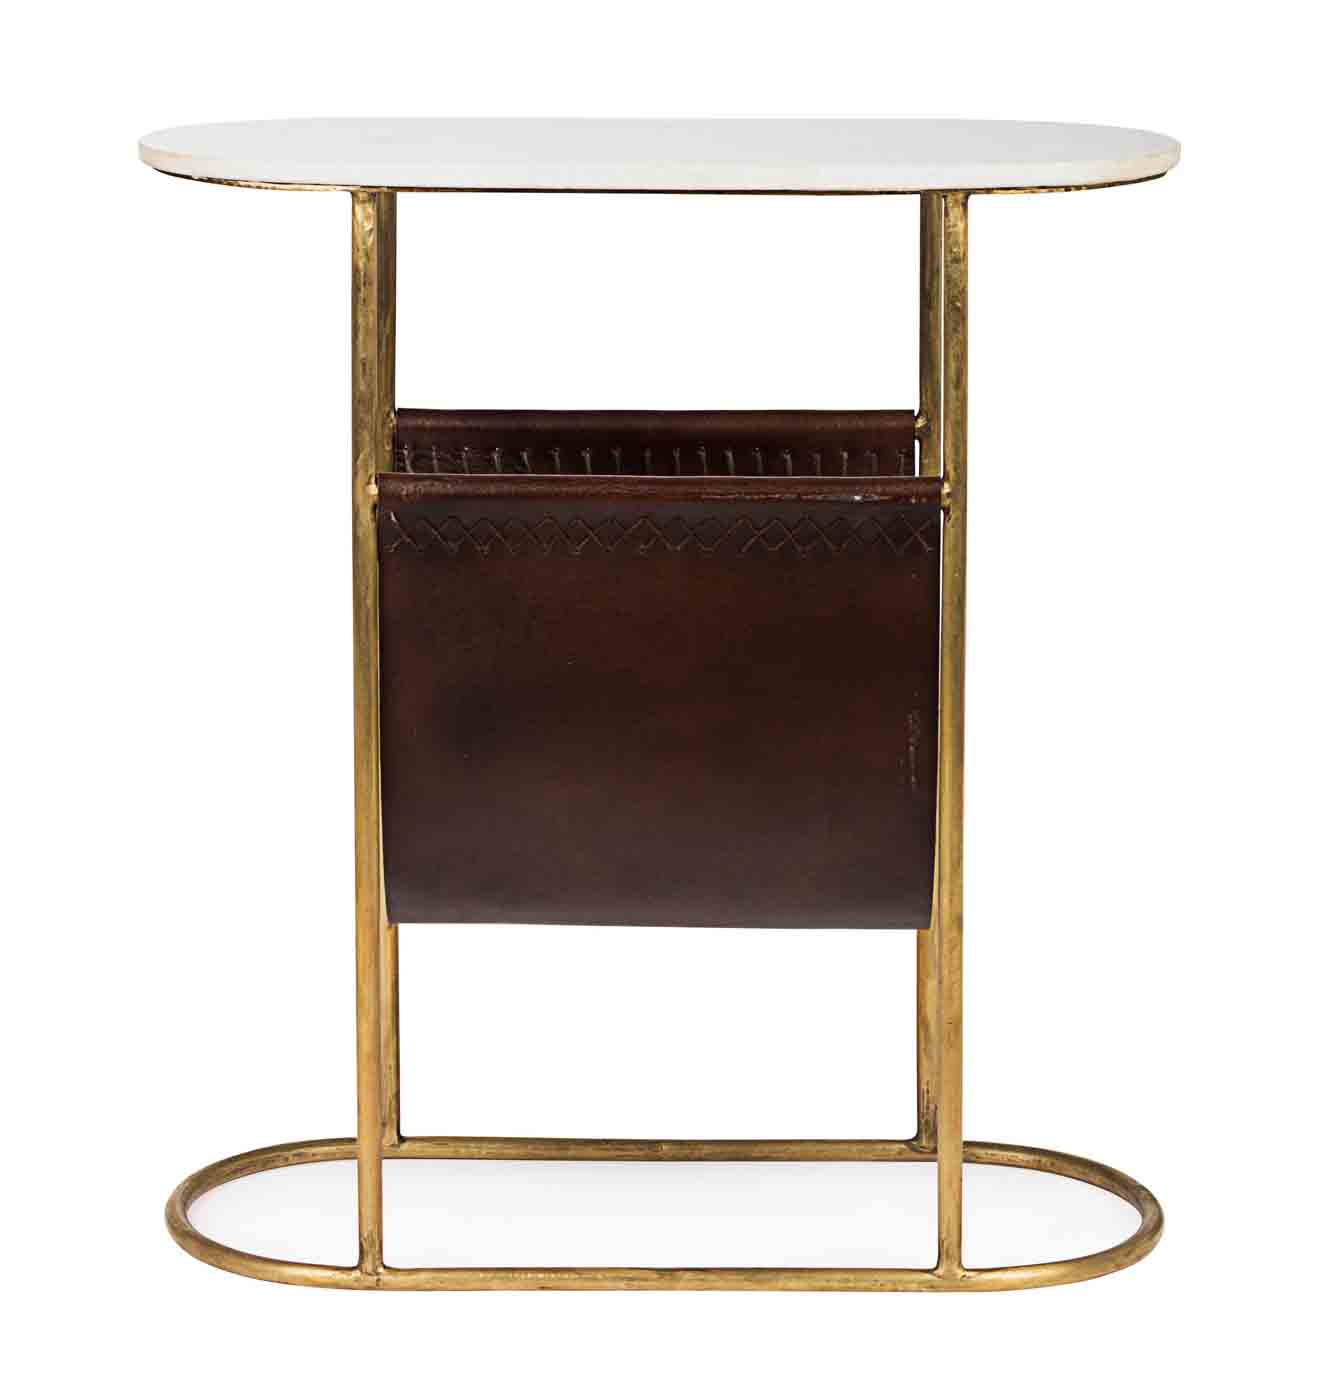 Das Gestell des Beistelltisches Marm ist aus vergoldetem Metall hergestellt. Die Tischplatte ist aus Marmor und unterstreicht das klassische Design. Der Tisch verfügt über ein Zeitschriftständer aus echtem Leder.